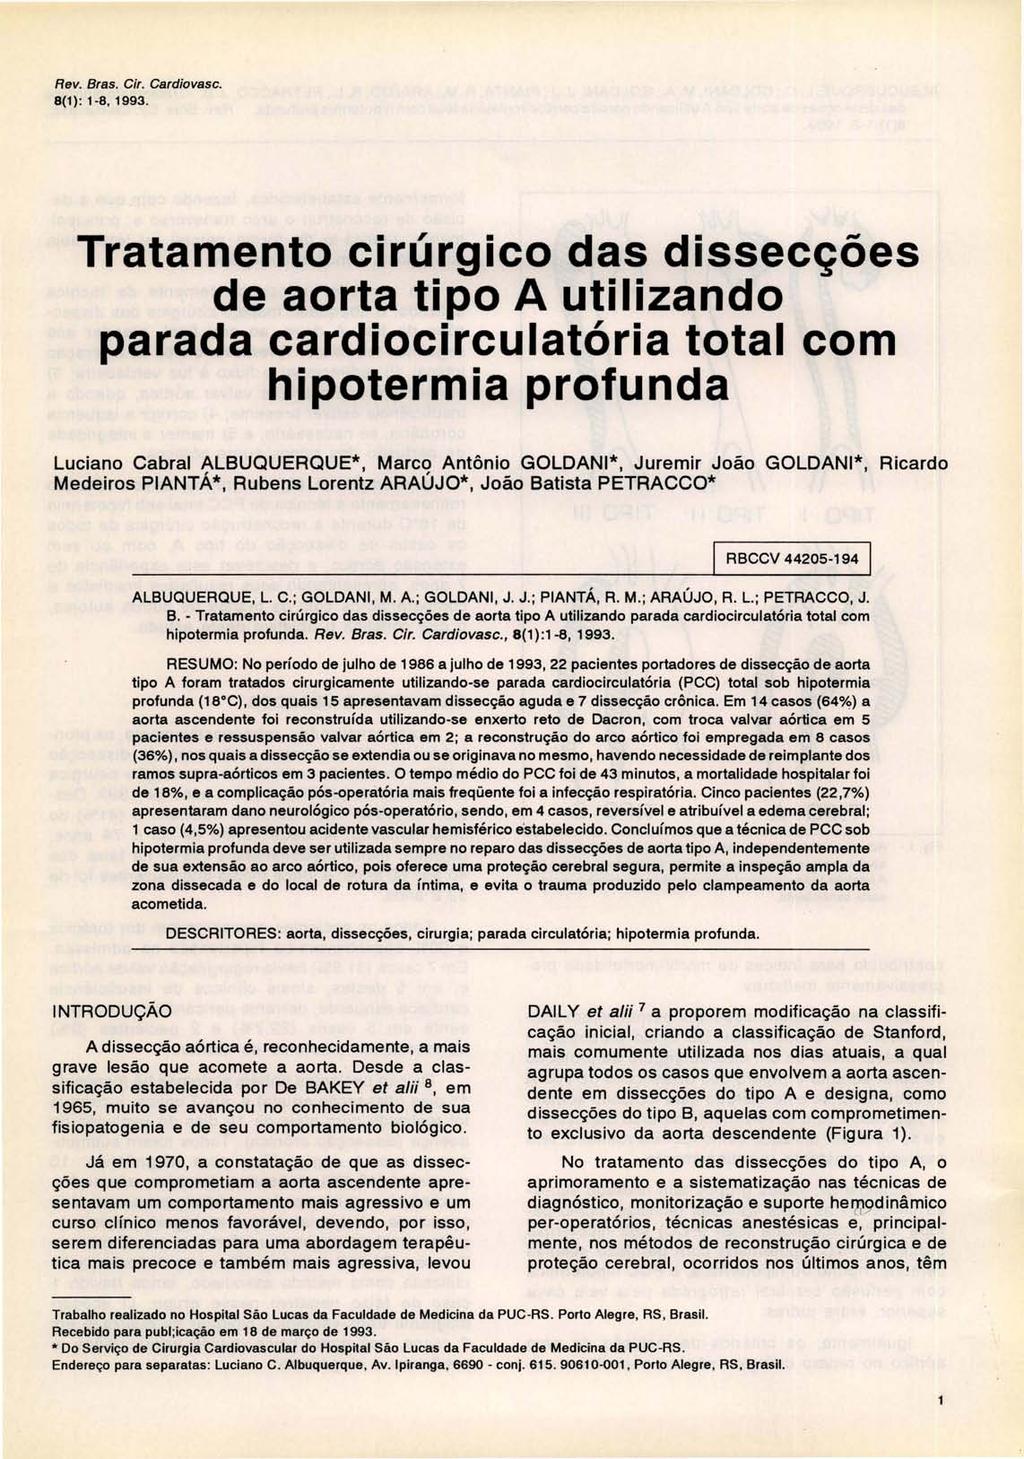 Rev. Bras. Gir. Gardiovasc. 8(1): 1-8. 1993.